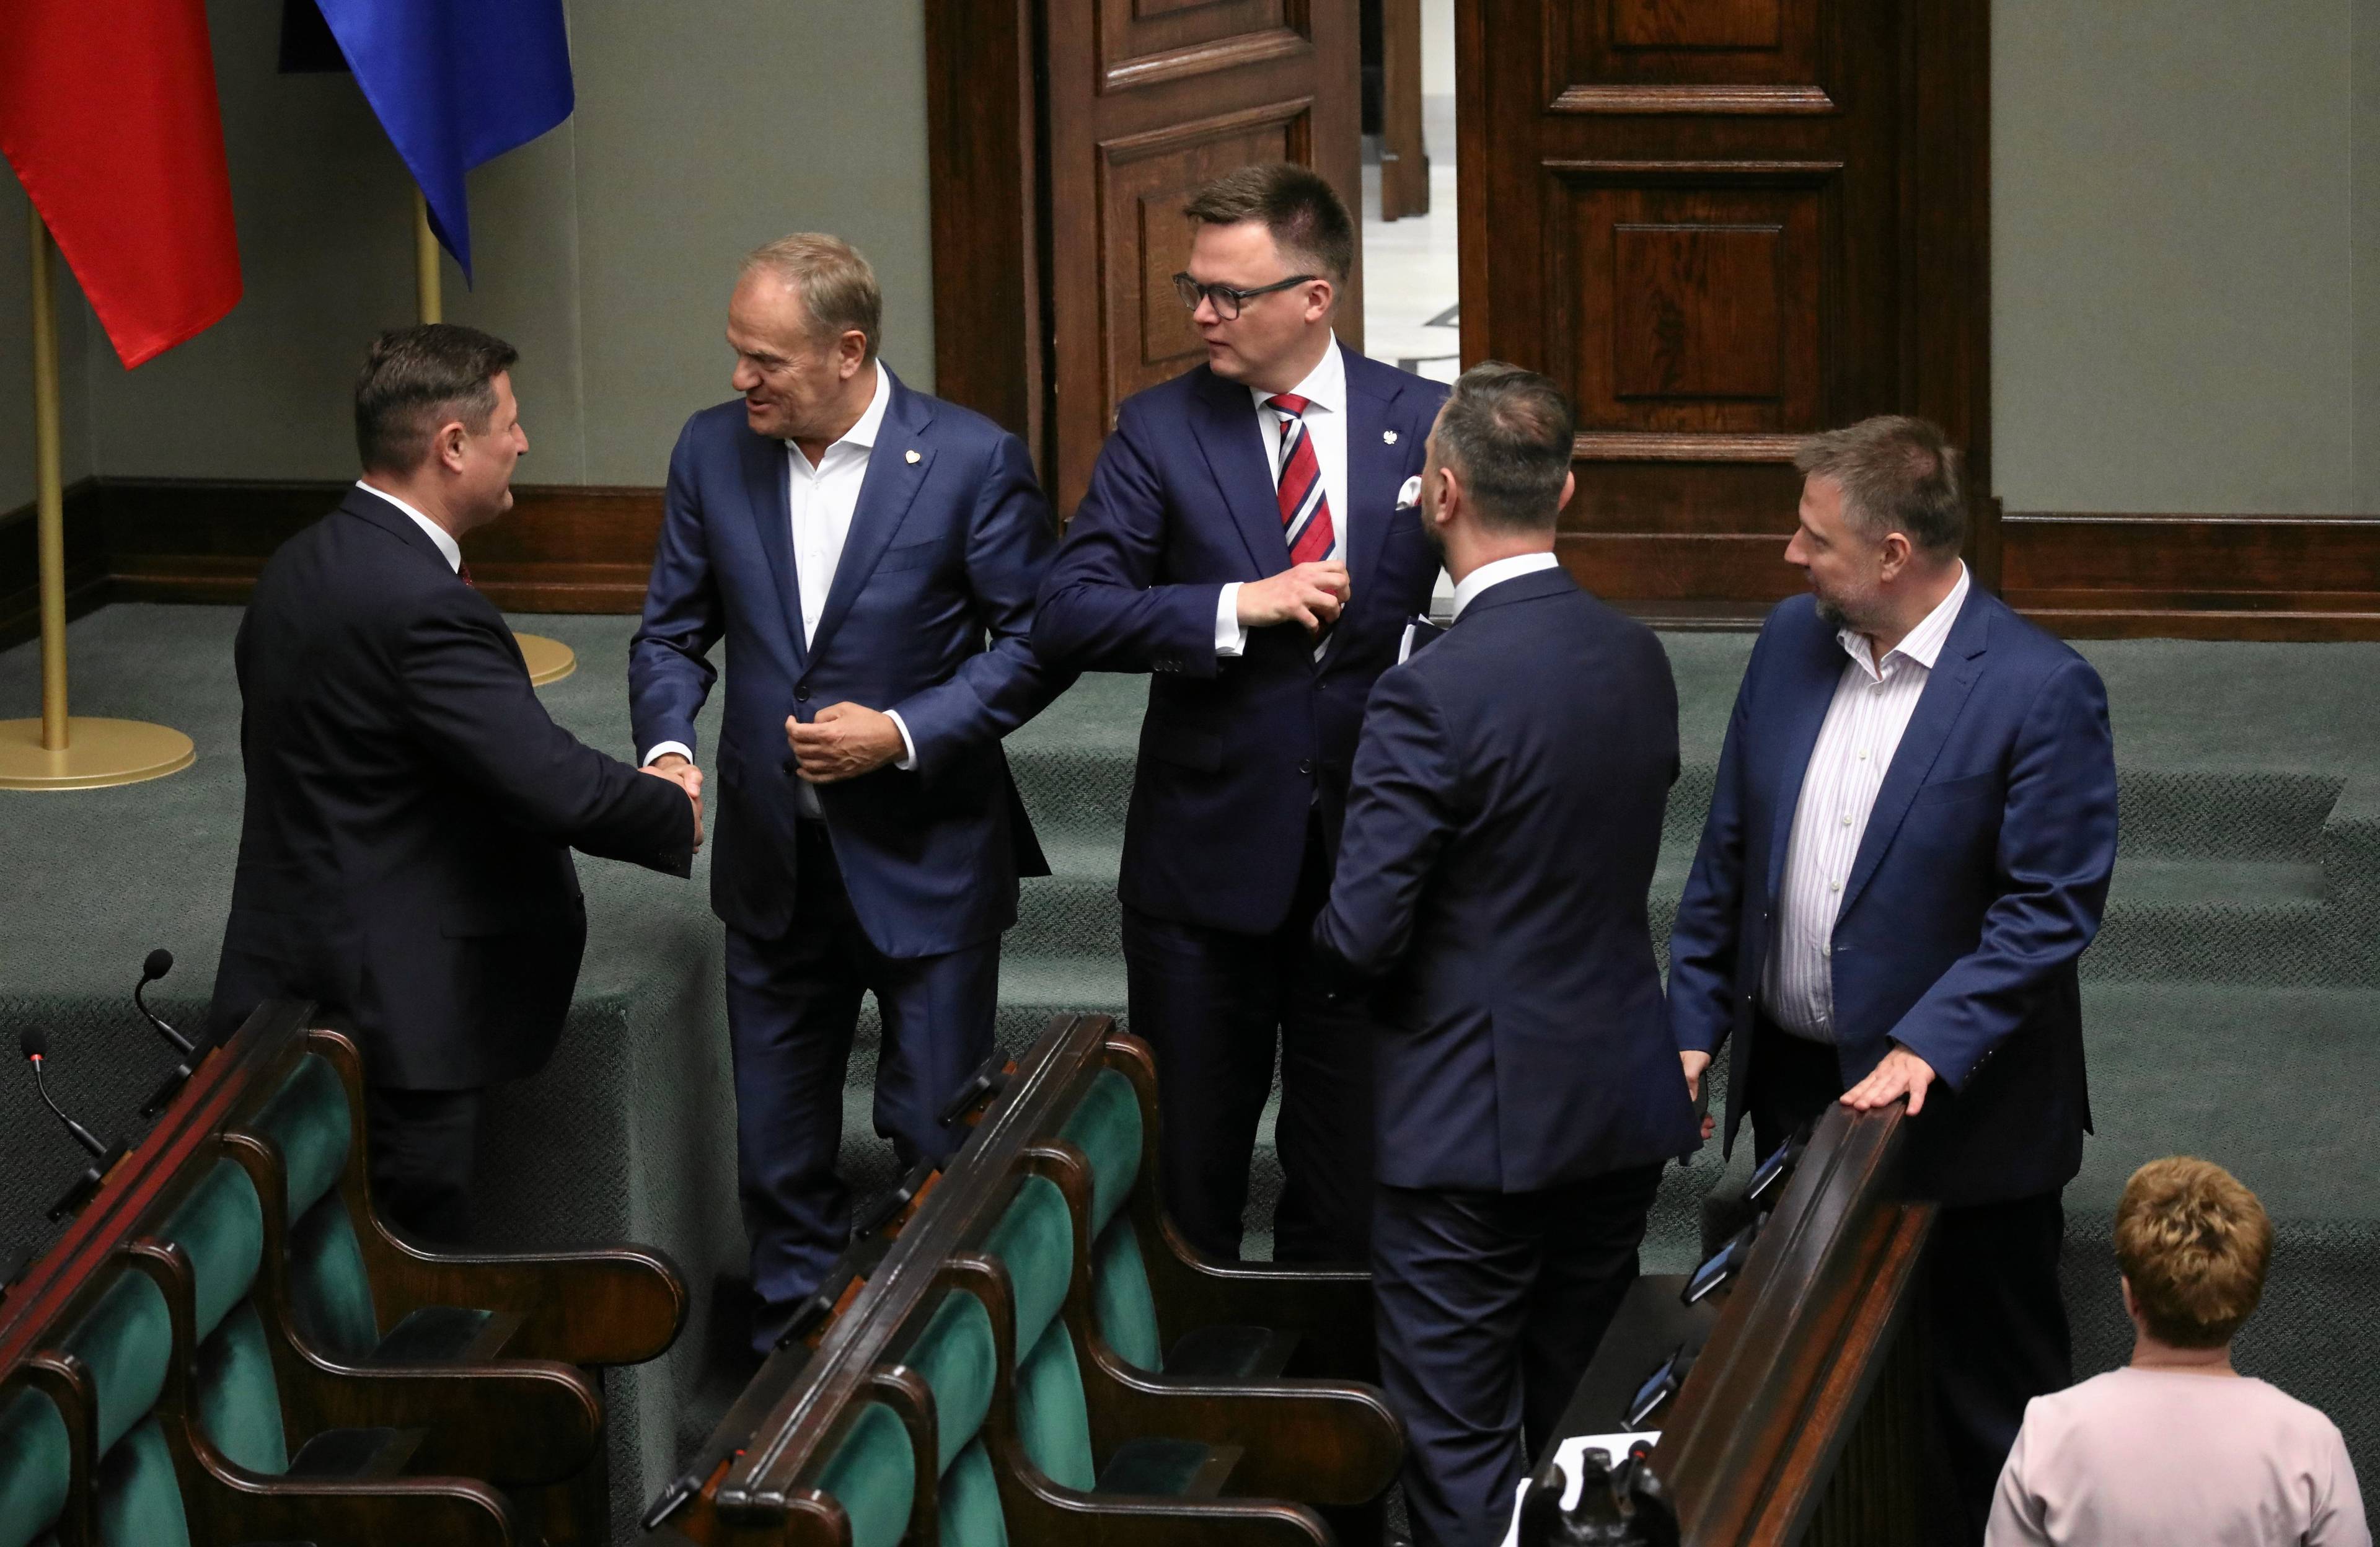 Donald Tusk, Szymon Hołownia, Władysław Kosiniak-Kamysz w ławach rządowych w Sejmie. Sondaż koalicja